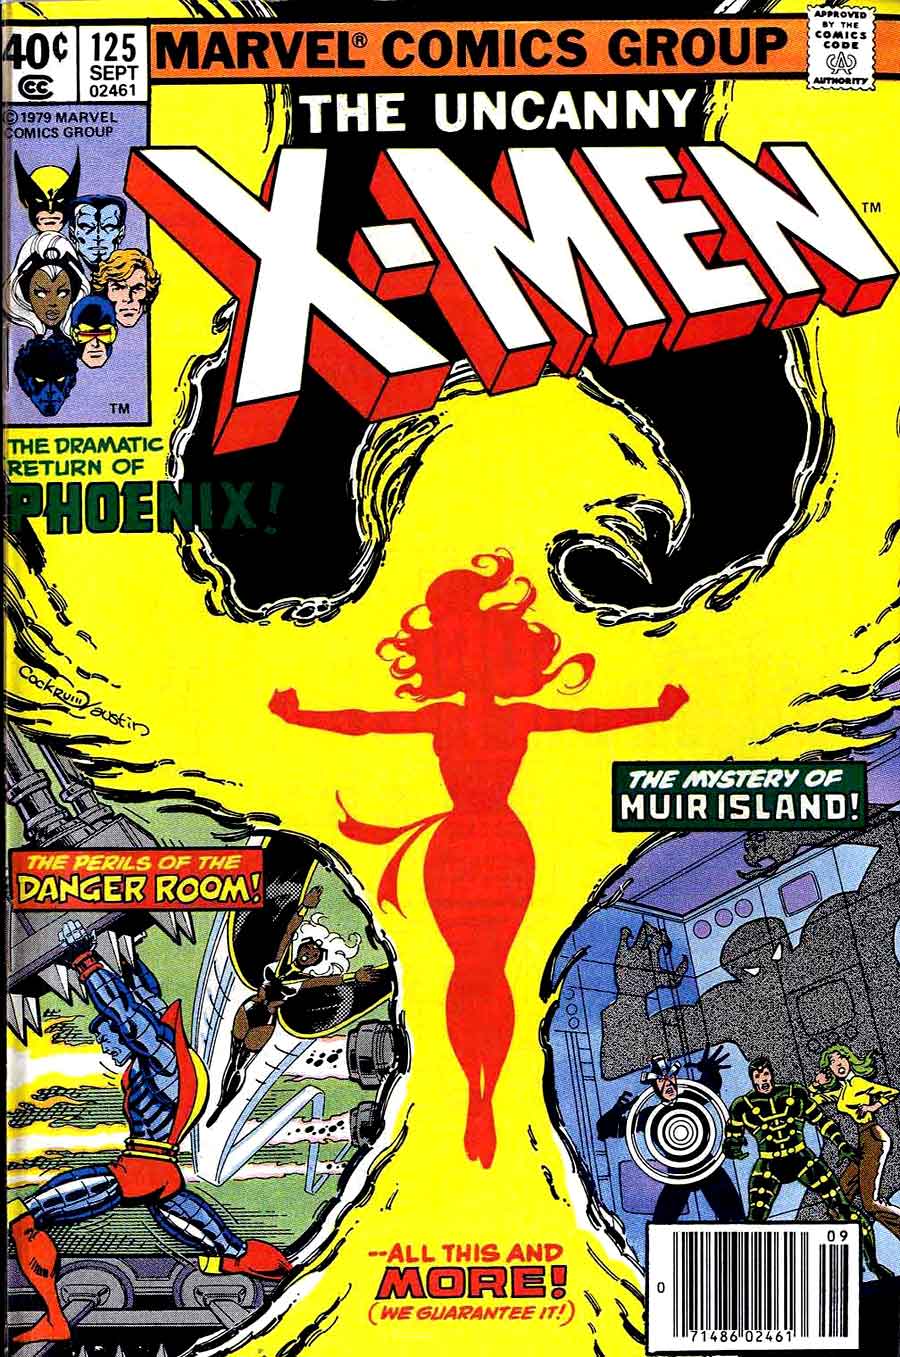 X-men v1 #125 marvel comic book cover art by John Byrne